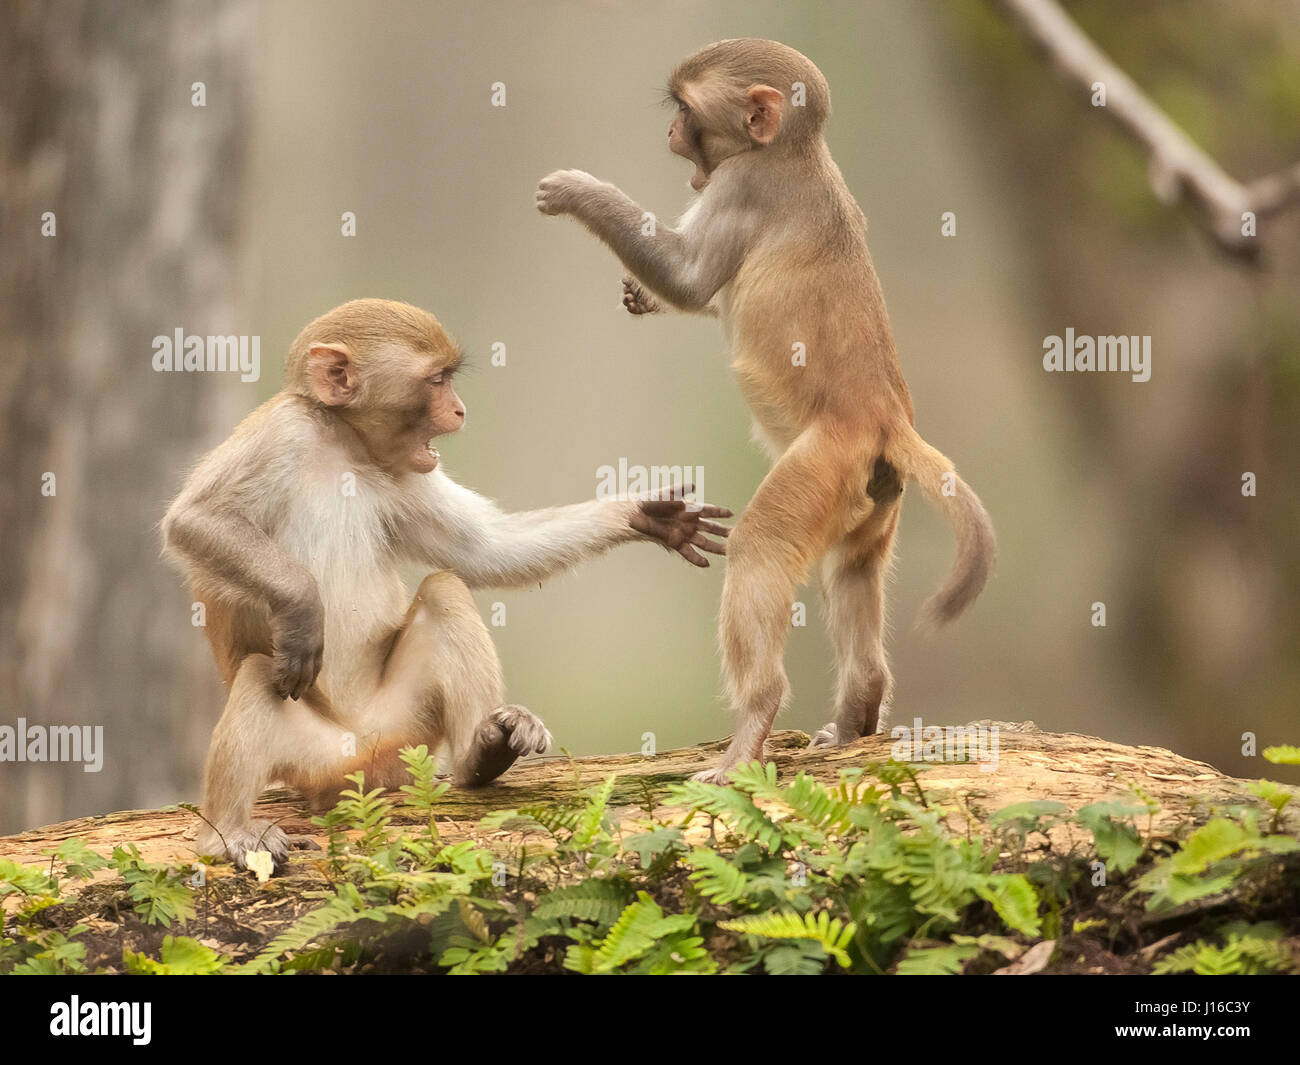 Forêt nationale d'Ocala, Floride : UN MACAQUE lutte a commencé comme un  combat de Kung Fu avant un cheeky monkey a décidé de baisser le ton en  saisissant son adversaire par l'entrejambe.